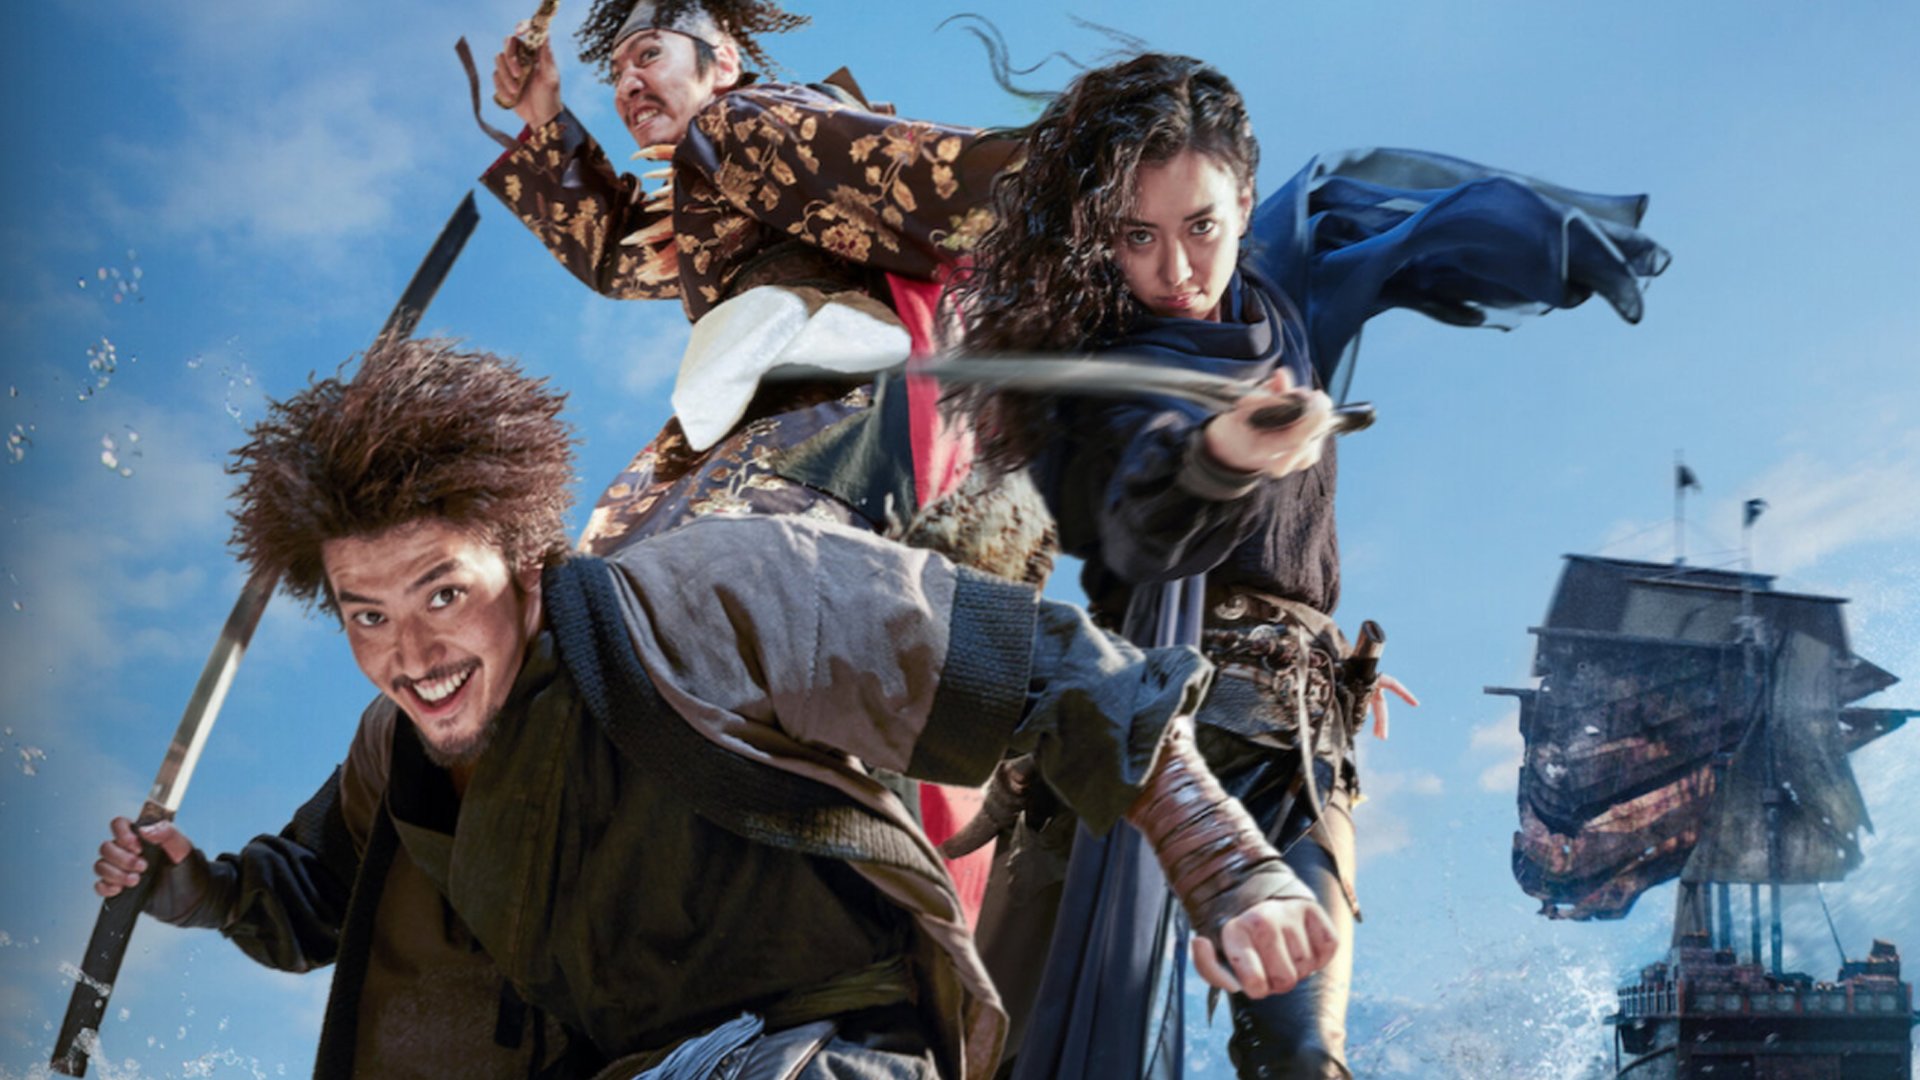 #Netflix hat jetzt sein eigenes „Fluch der Karibik“: Piraten-Abenteuer erobert die deutschen Charts